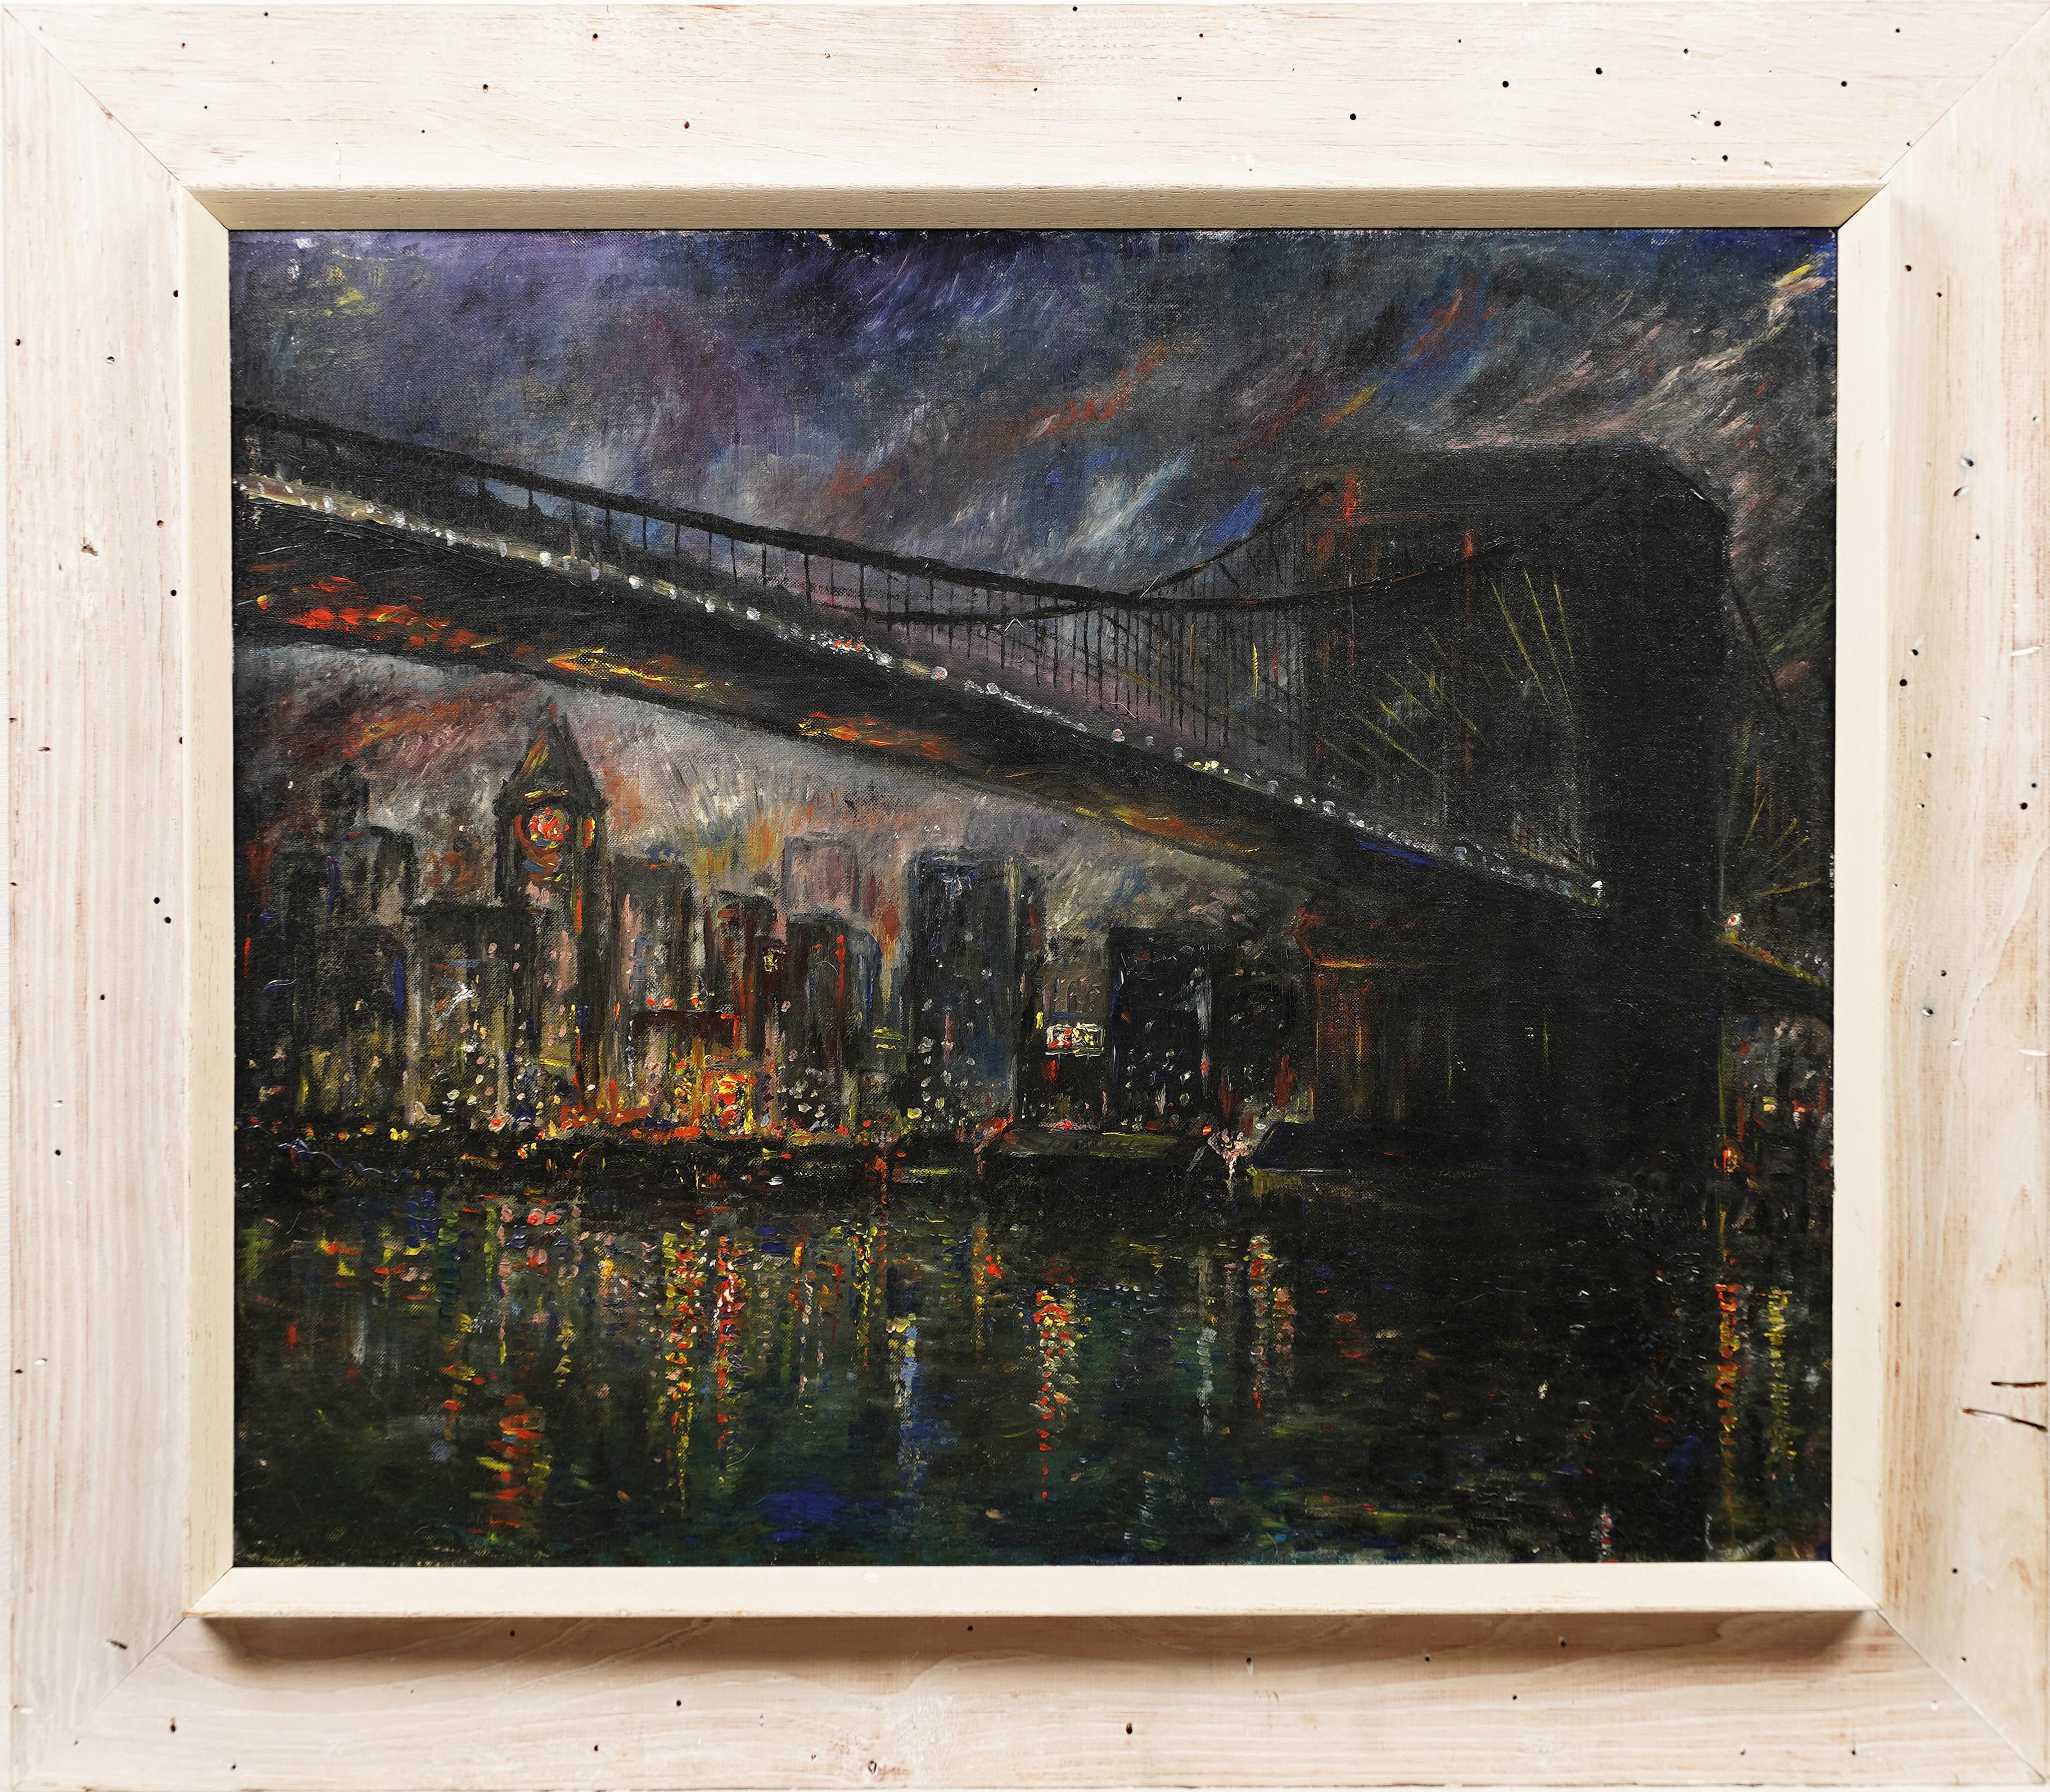 Exhibited Ashcan School Nocturnal New York City Brooklyn Bridge, Ölgemälde – Painting von Unknown